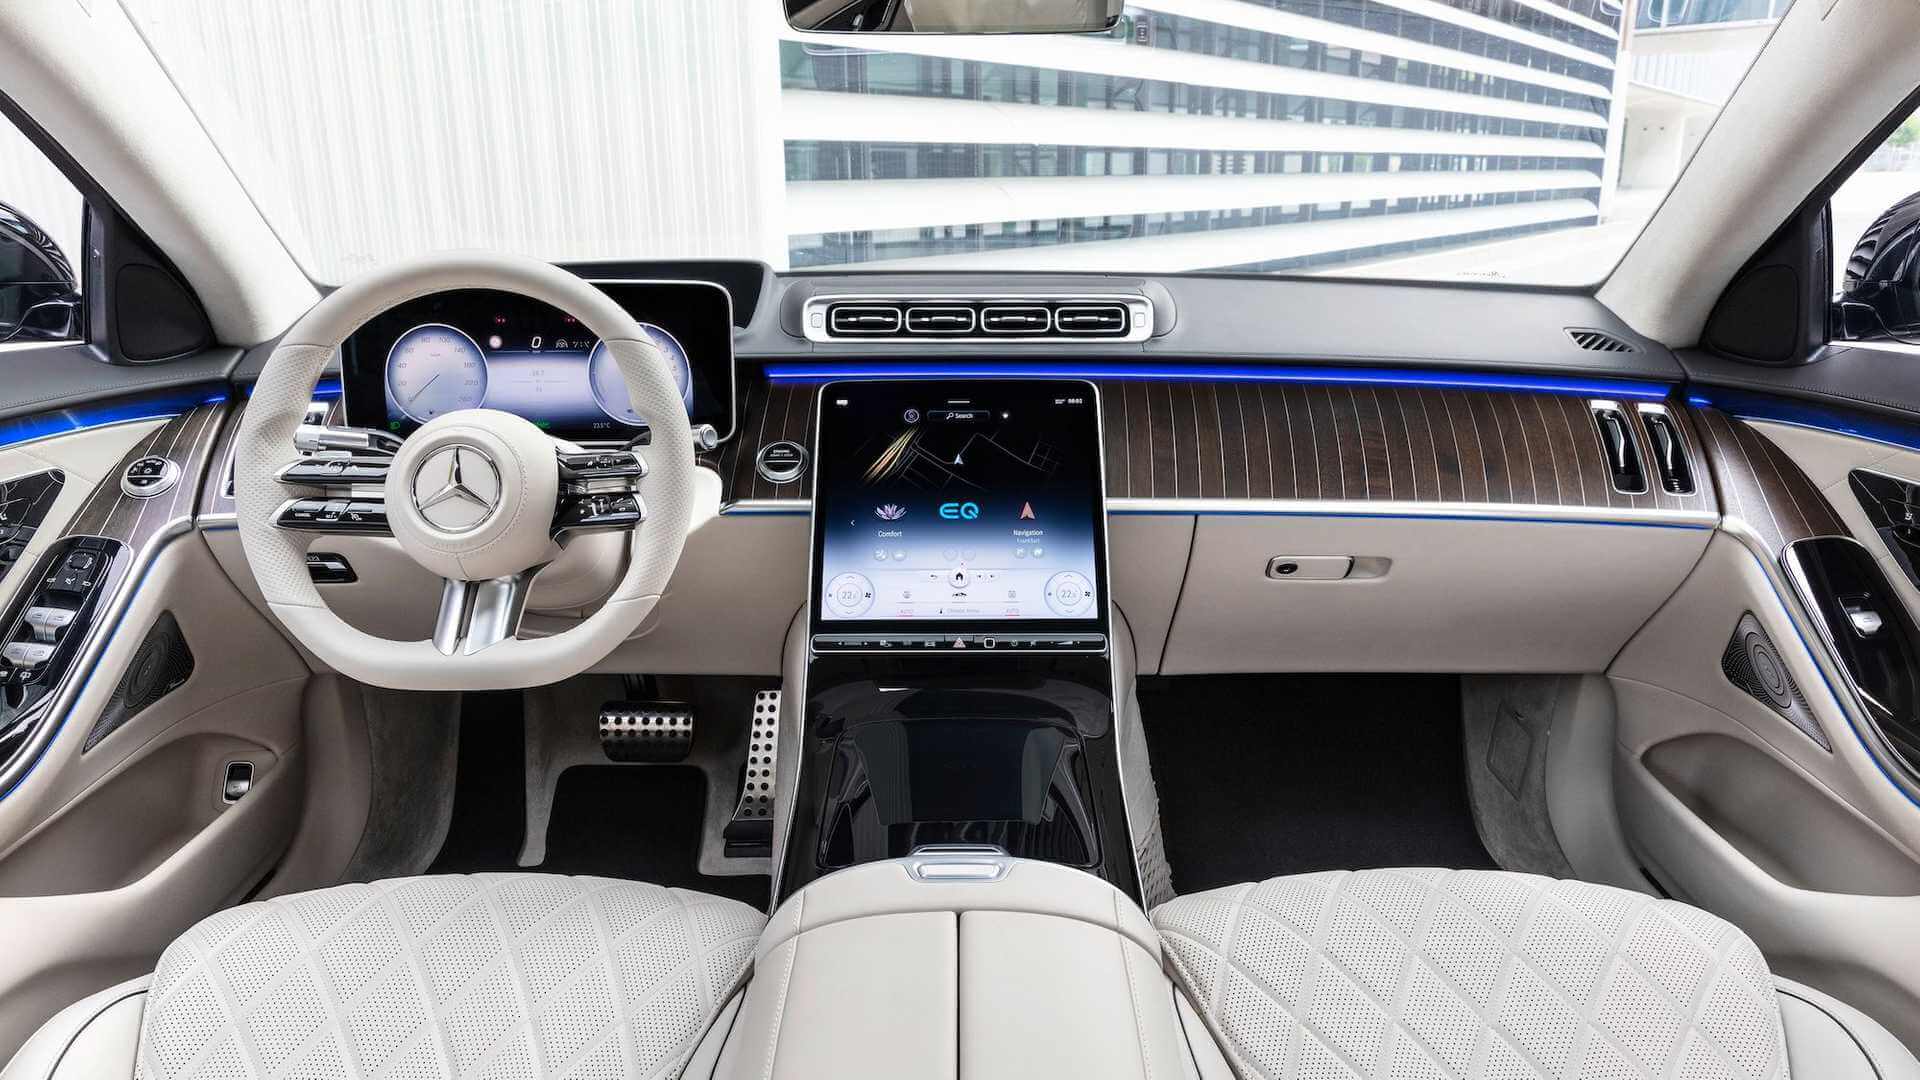 Люксовый интерьер плагин-гибрида Mercedes-Benz S580e